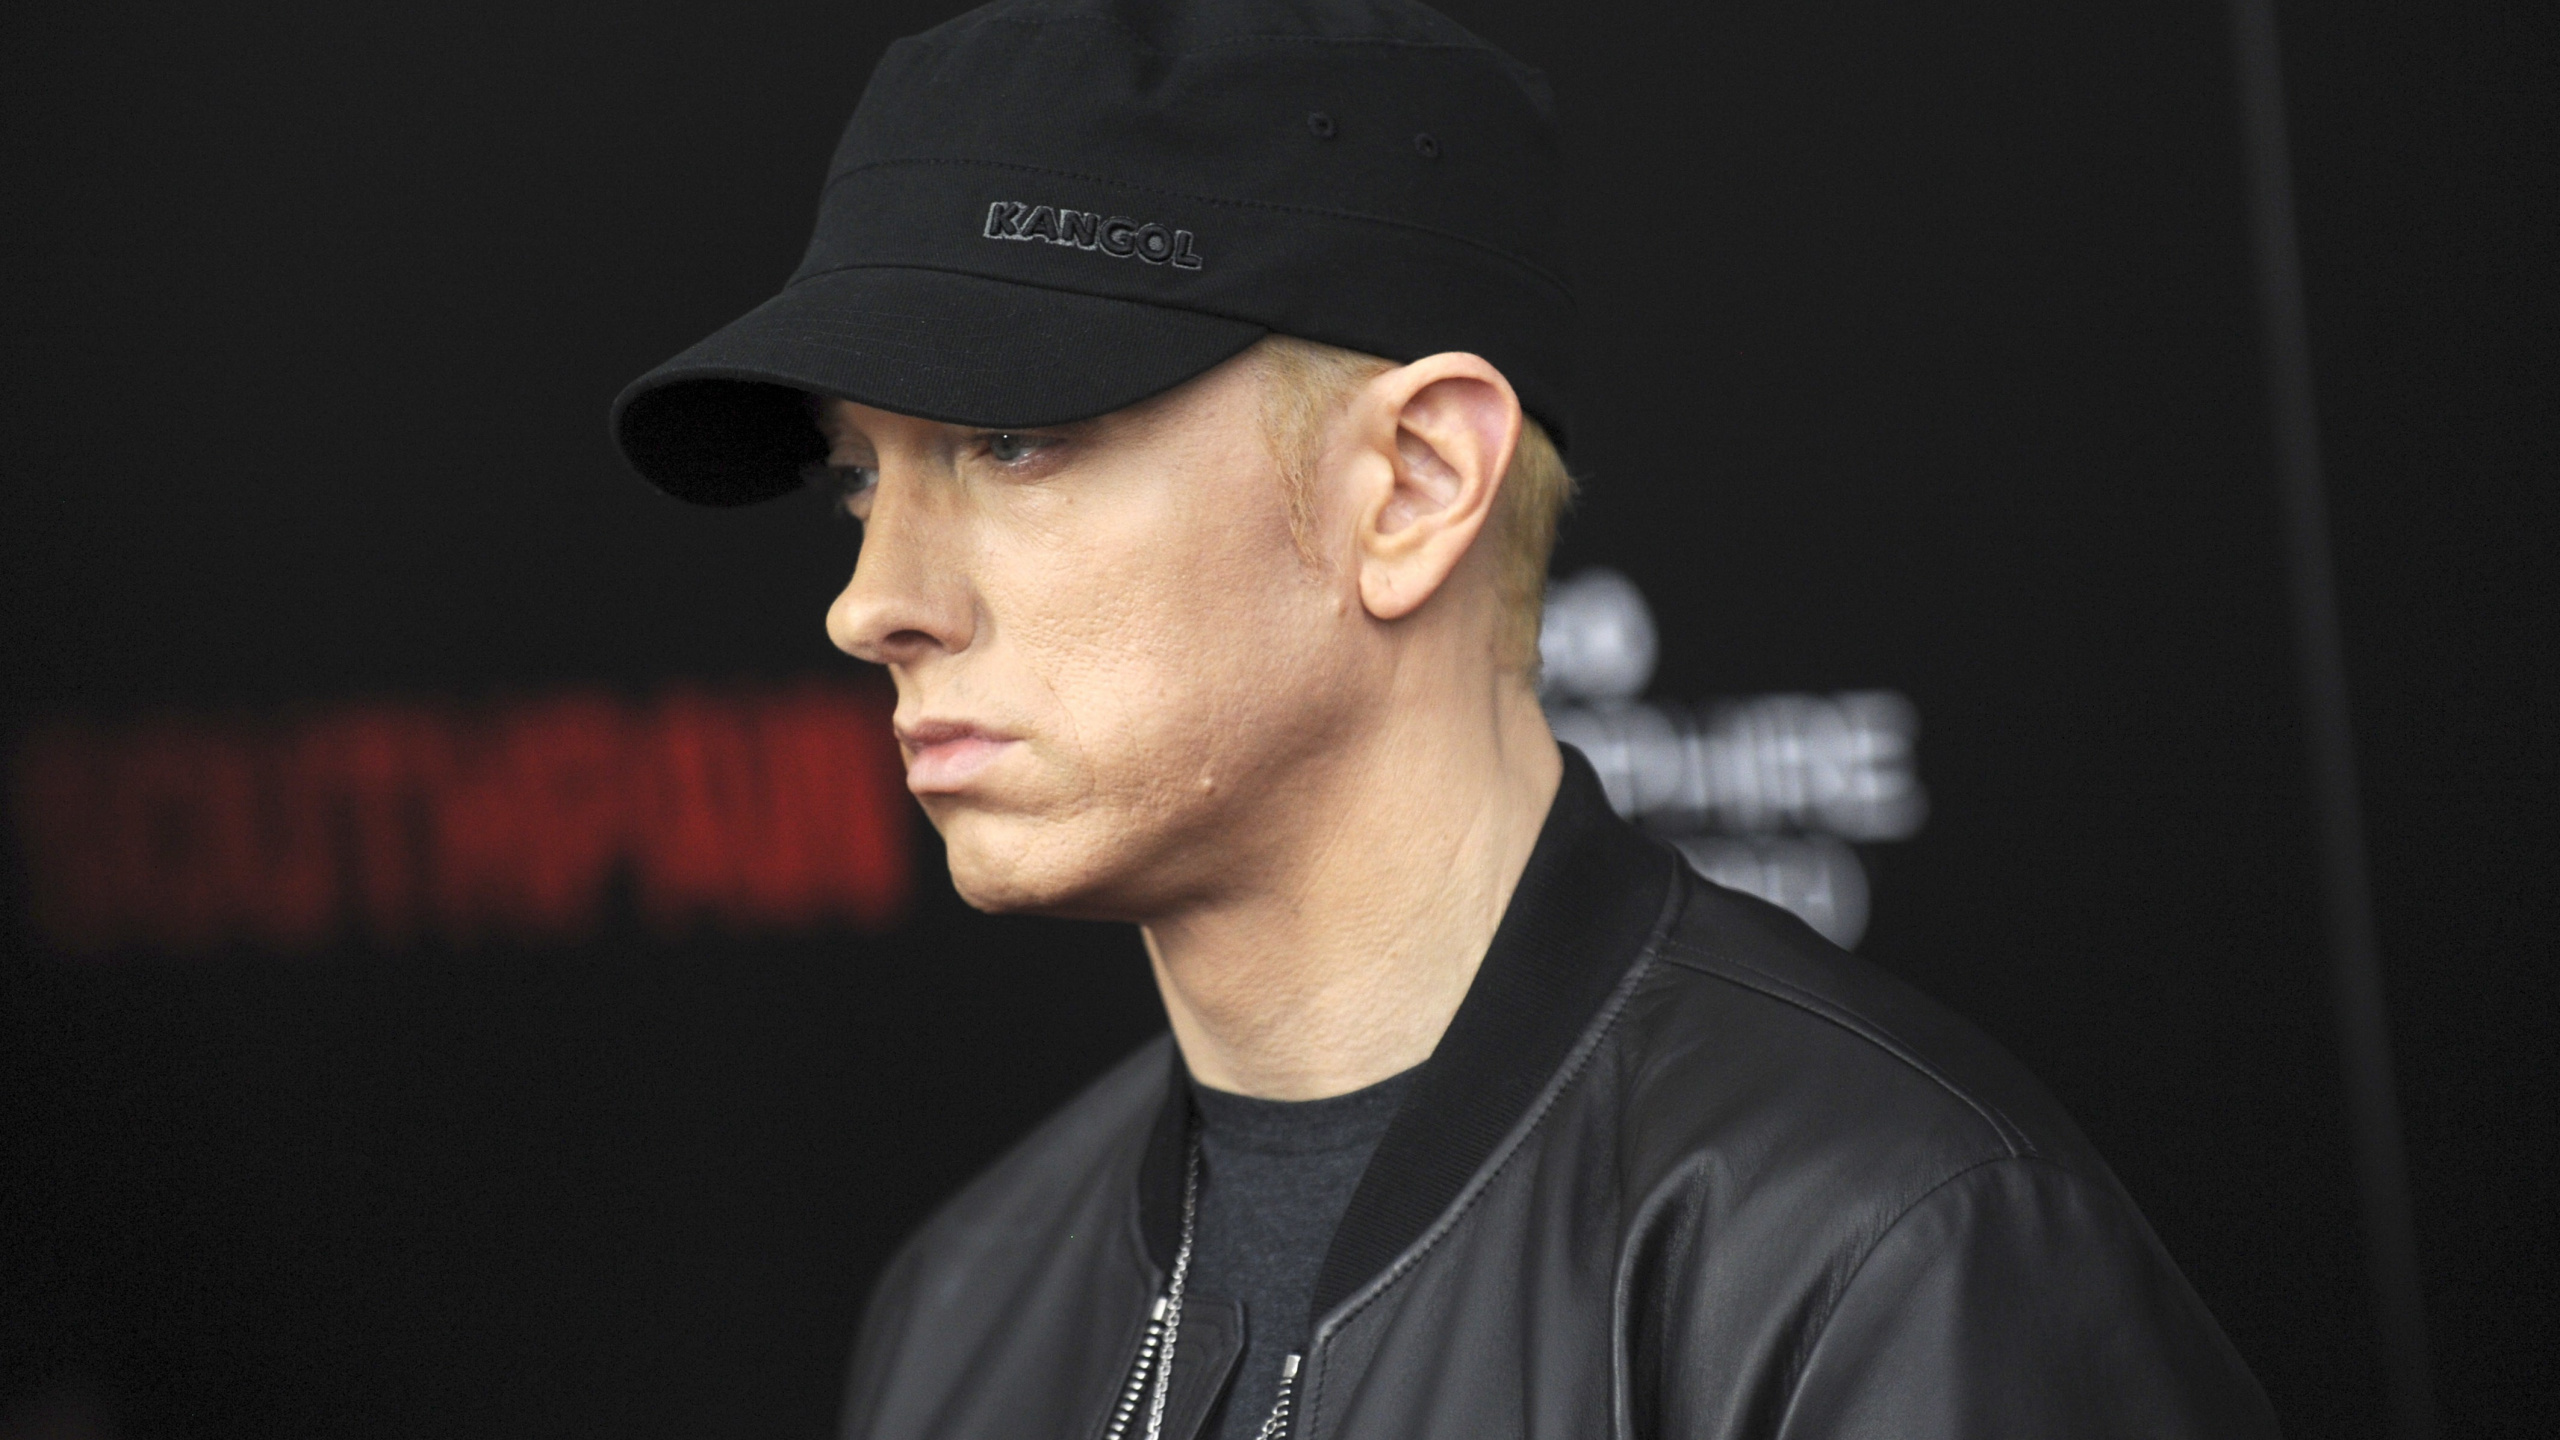 Eminem, Rapper, Hip-hop-Musik, Cool, Kappe. Wallpaper in 2560x1440 Resolution